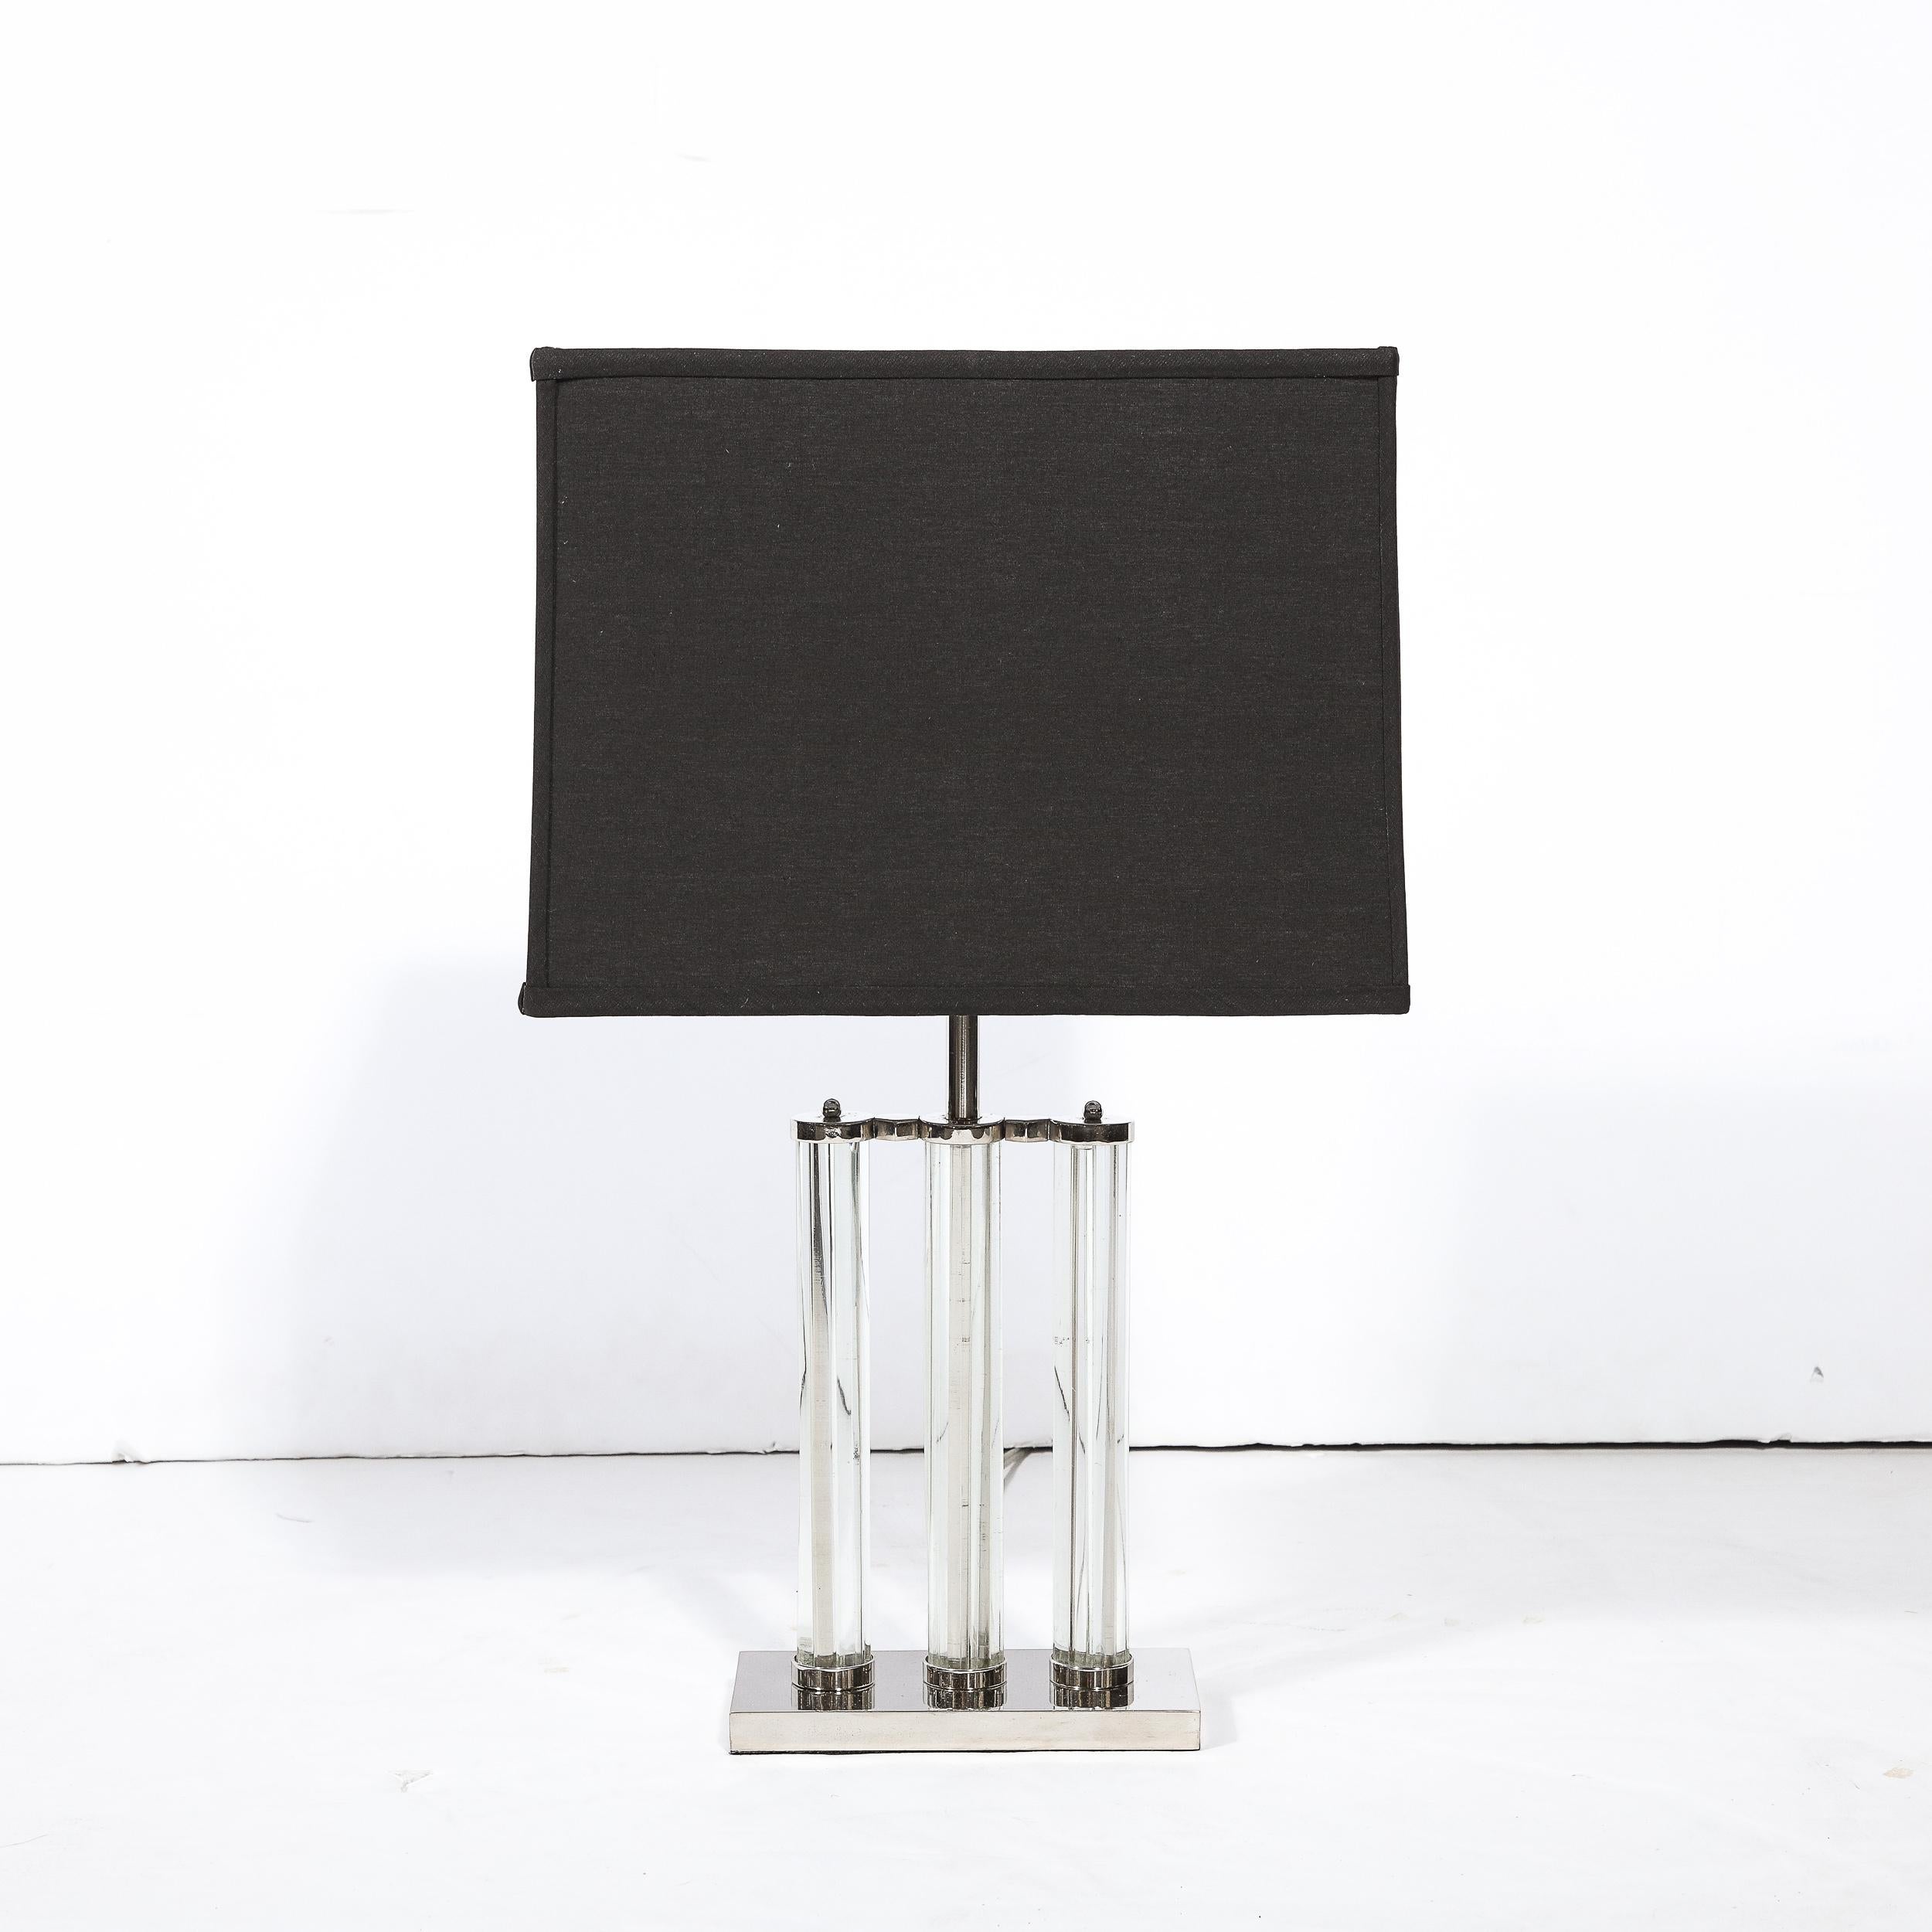 Cette élégante lampe de table Art déco de l'âge des machines a été réalisée aux États-Unis vers 1935. Elle présente une base rectangulaire volumétrique en chrome poli avec trois embellissements cylindriques en relief (dans le même matériau) qui